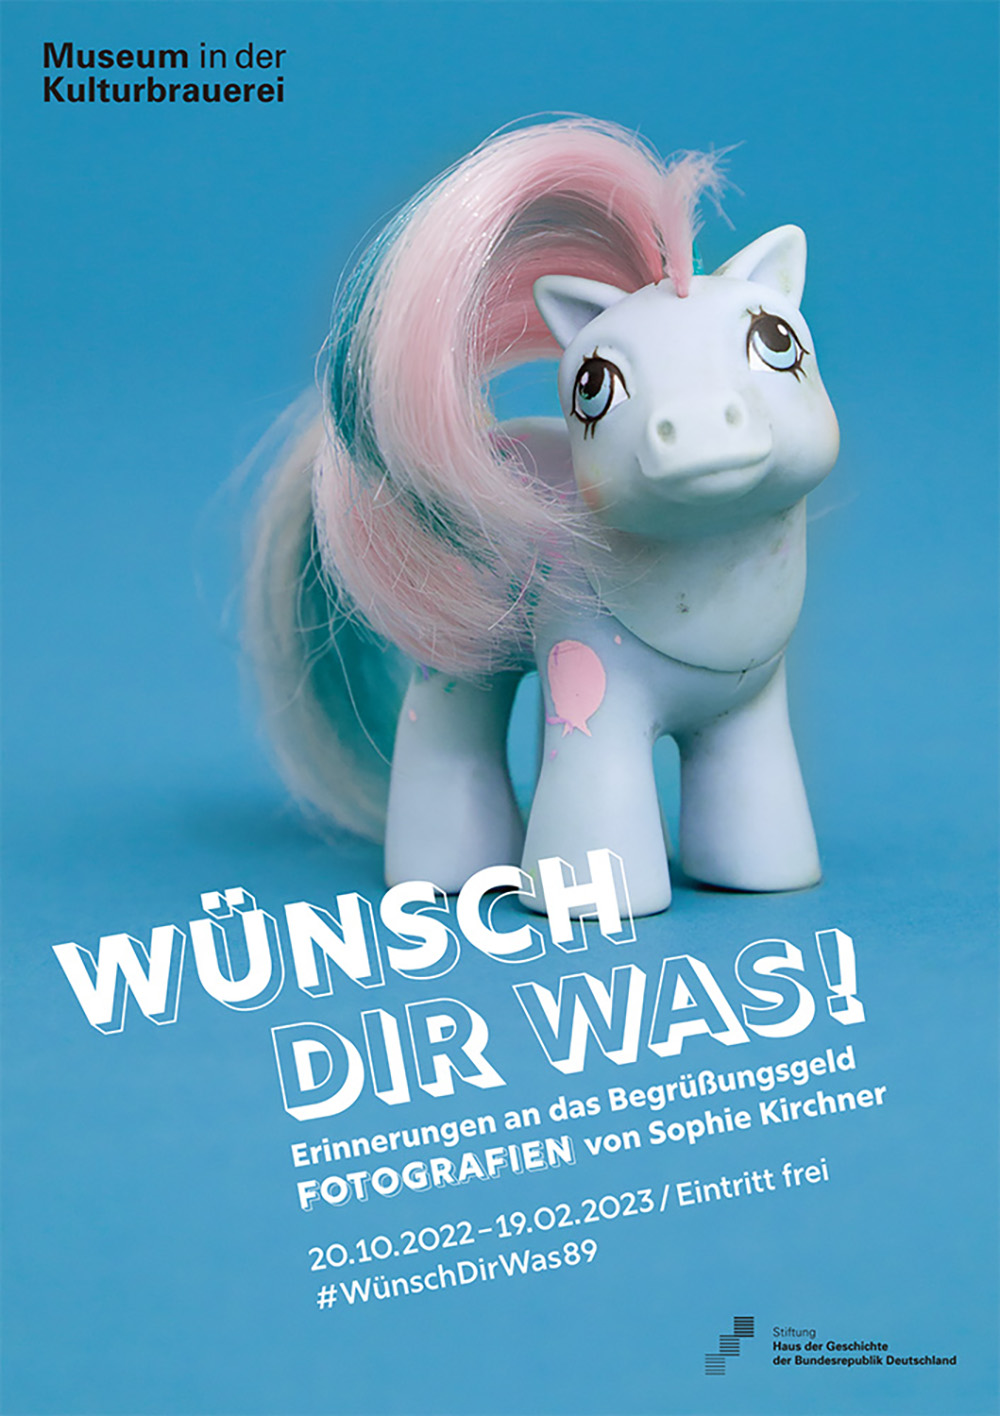 Plakat: Wünsch dir was! Erinnerungen an das Begrüßungsgeld mit Fotografien von Sophie Kirchner. Weißes Spielzeug-Pferdchen mit rosa-hellblauer Mähne auf blauem Hintergrund.